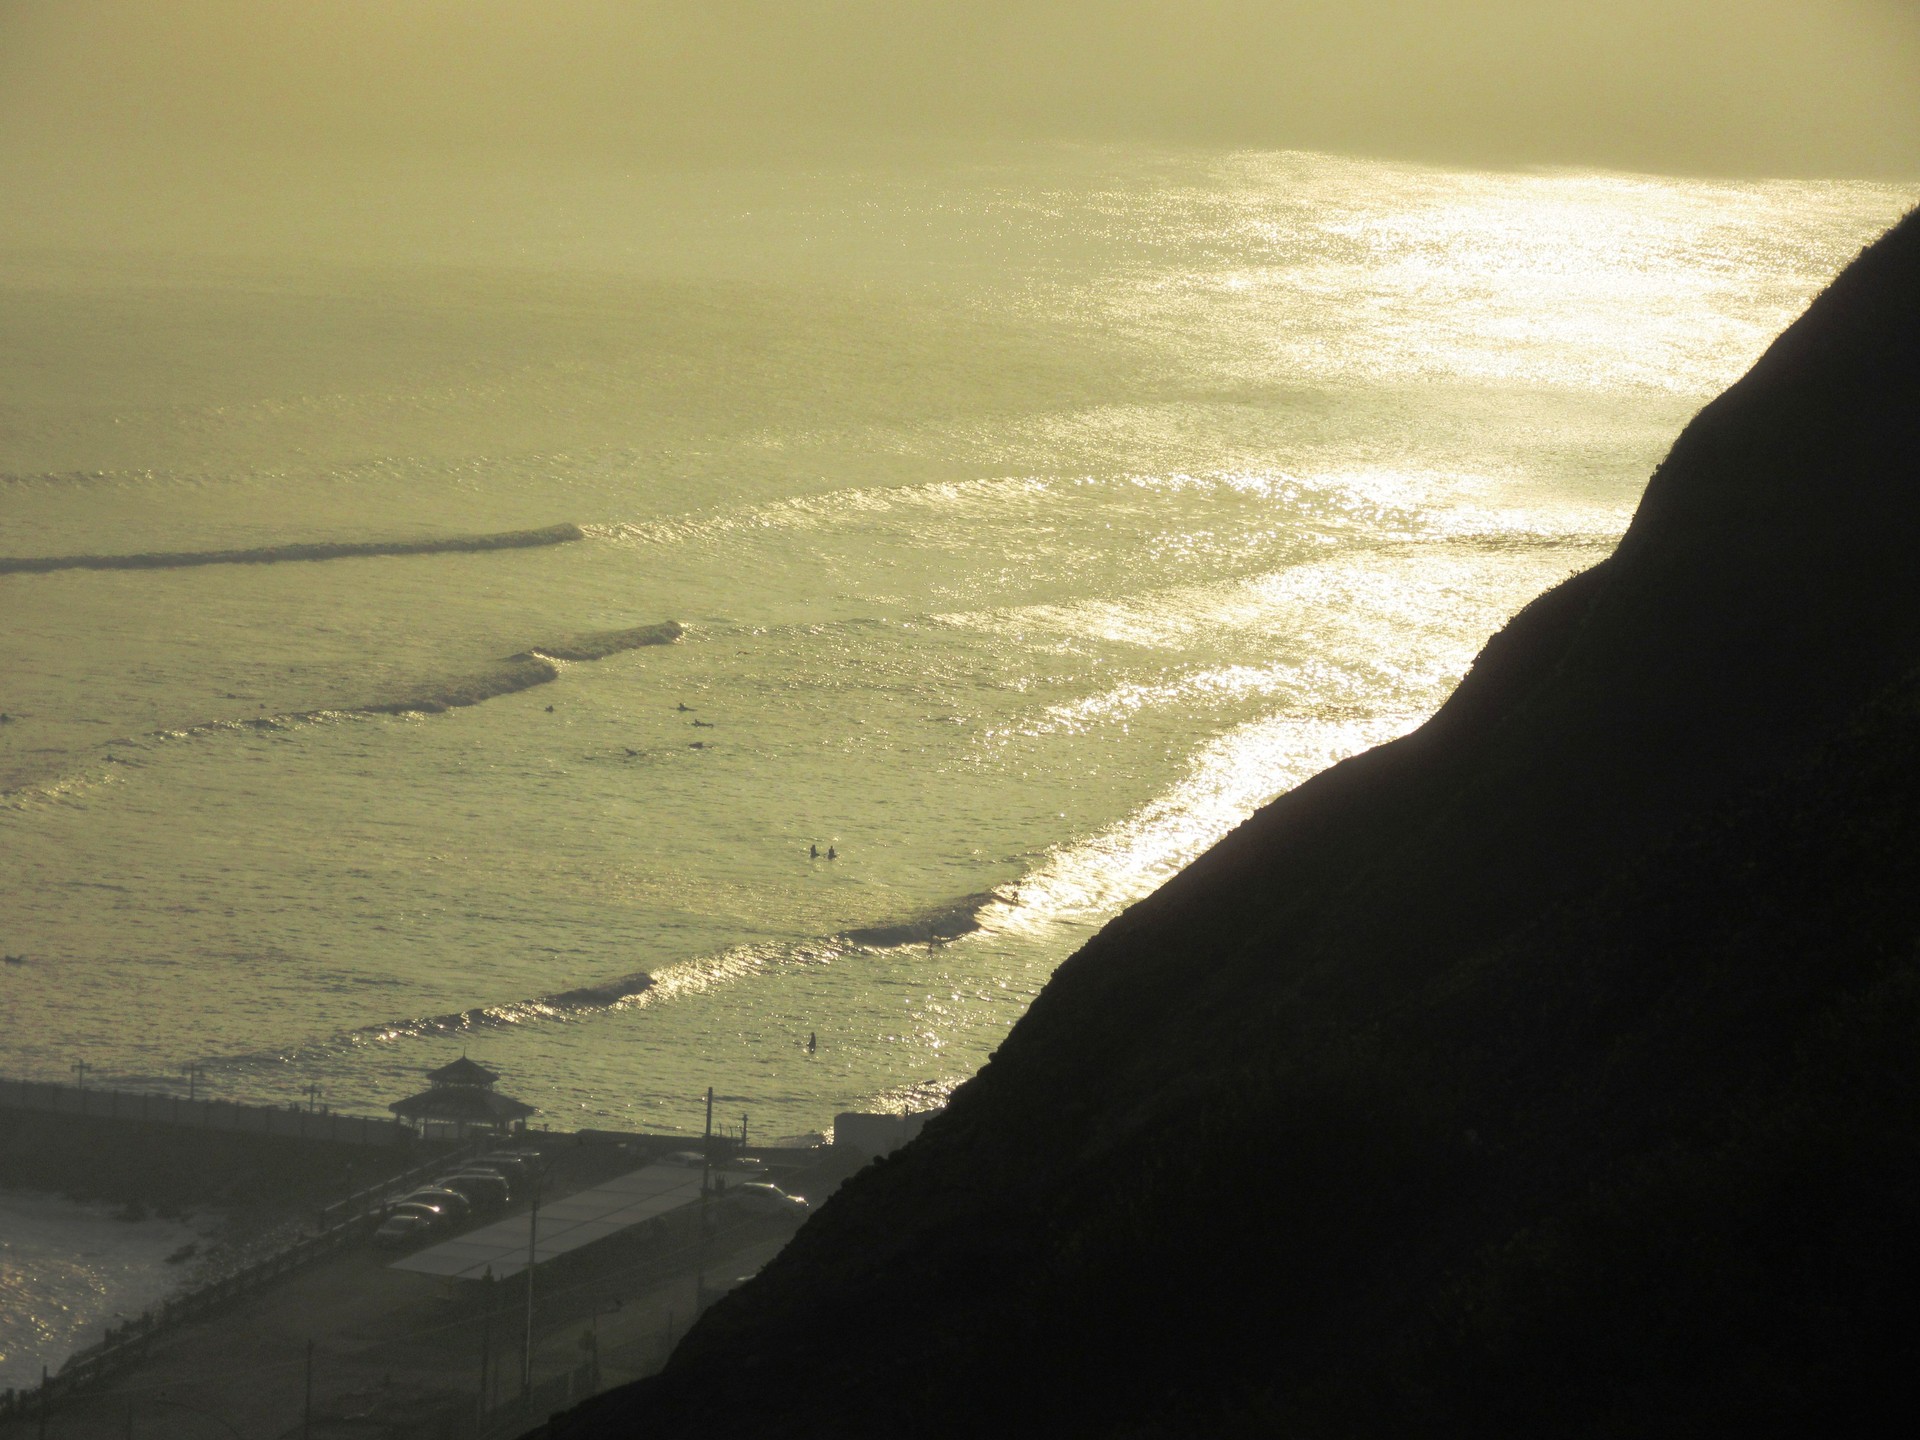 Quieres ir a los lugares más románticos de Lima? planea tu cita con estos 5  sitios. | Blog Erasmus Lima, Perú